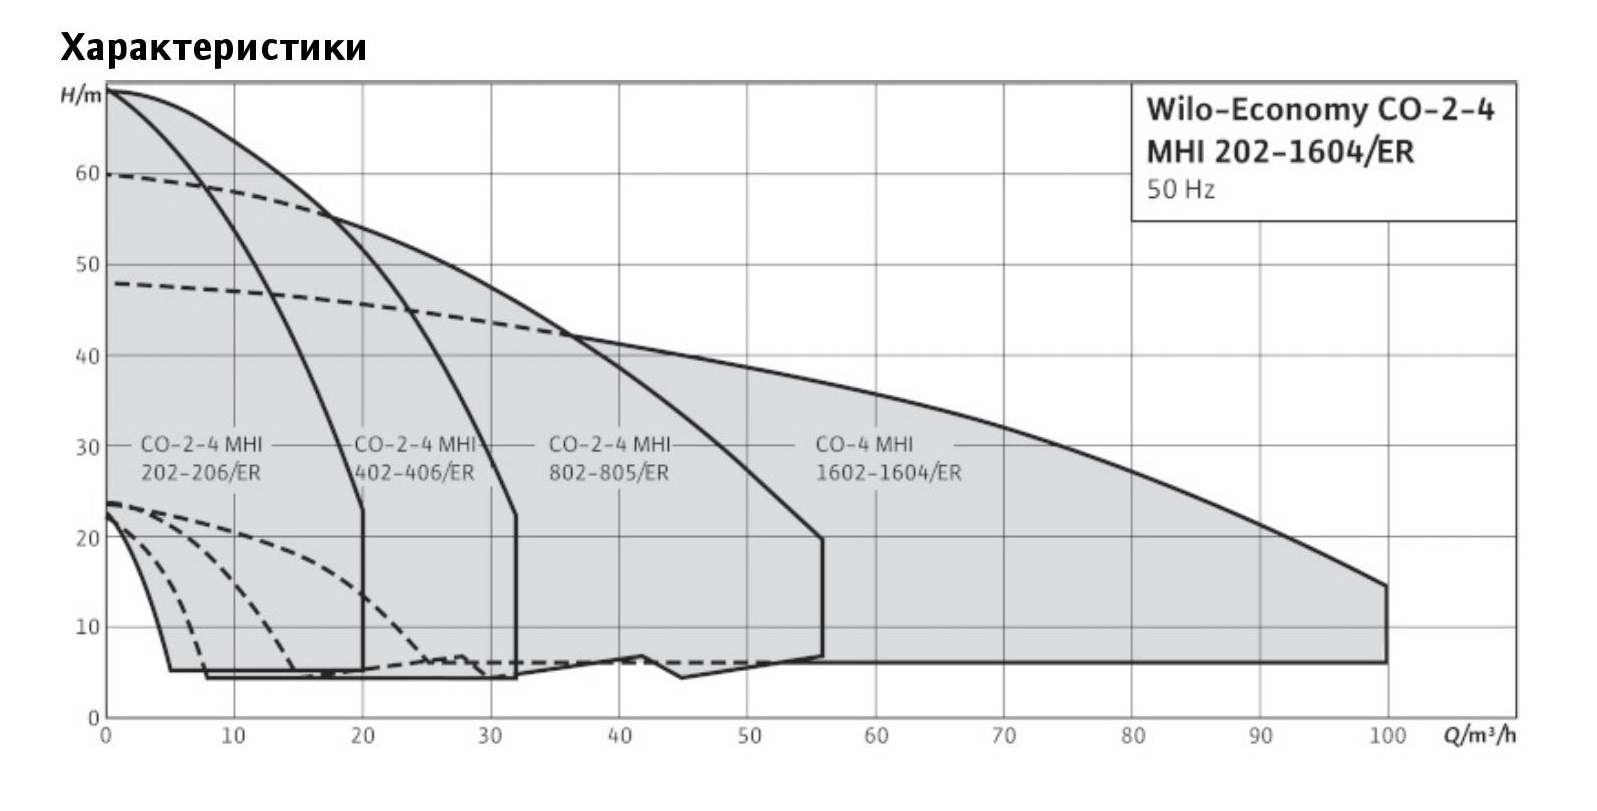 Wilo-Economy CO-3 MHI график